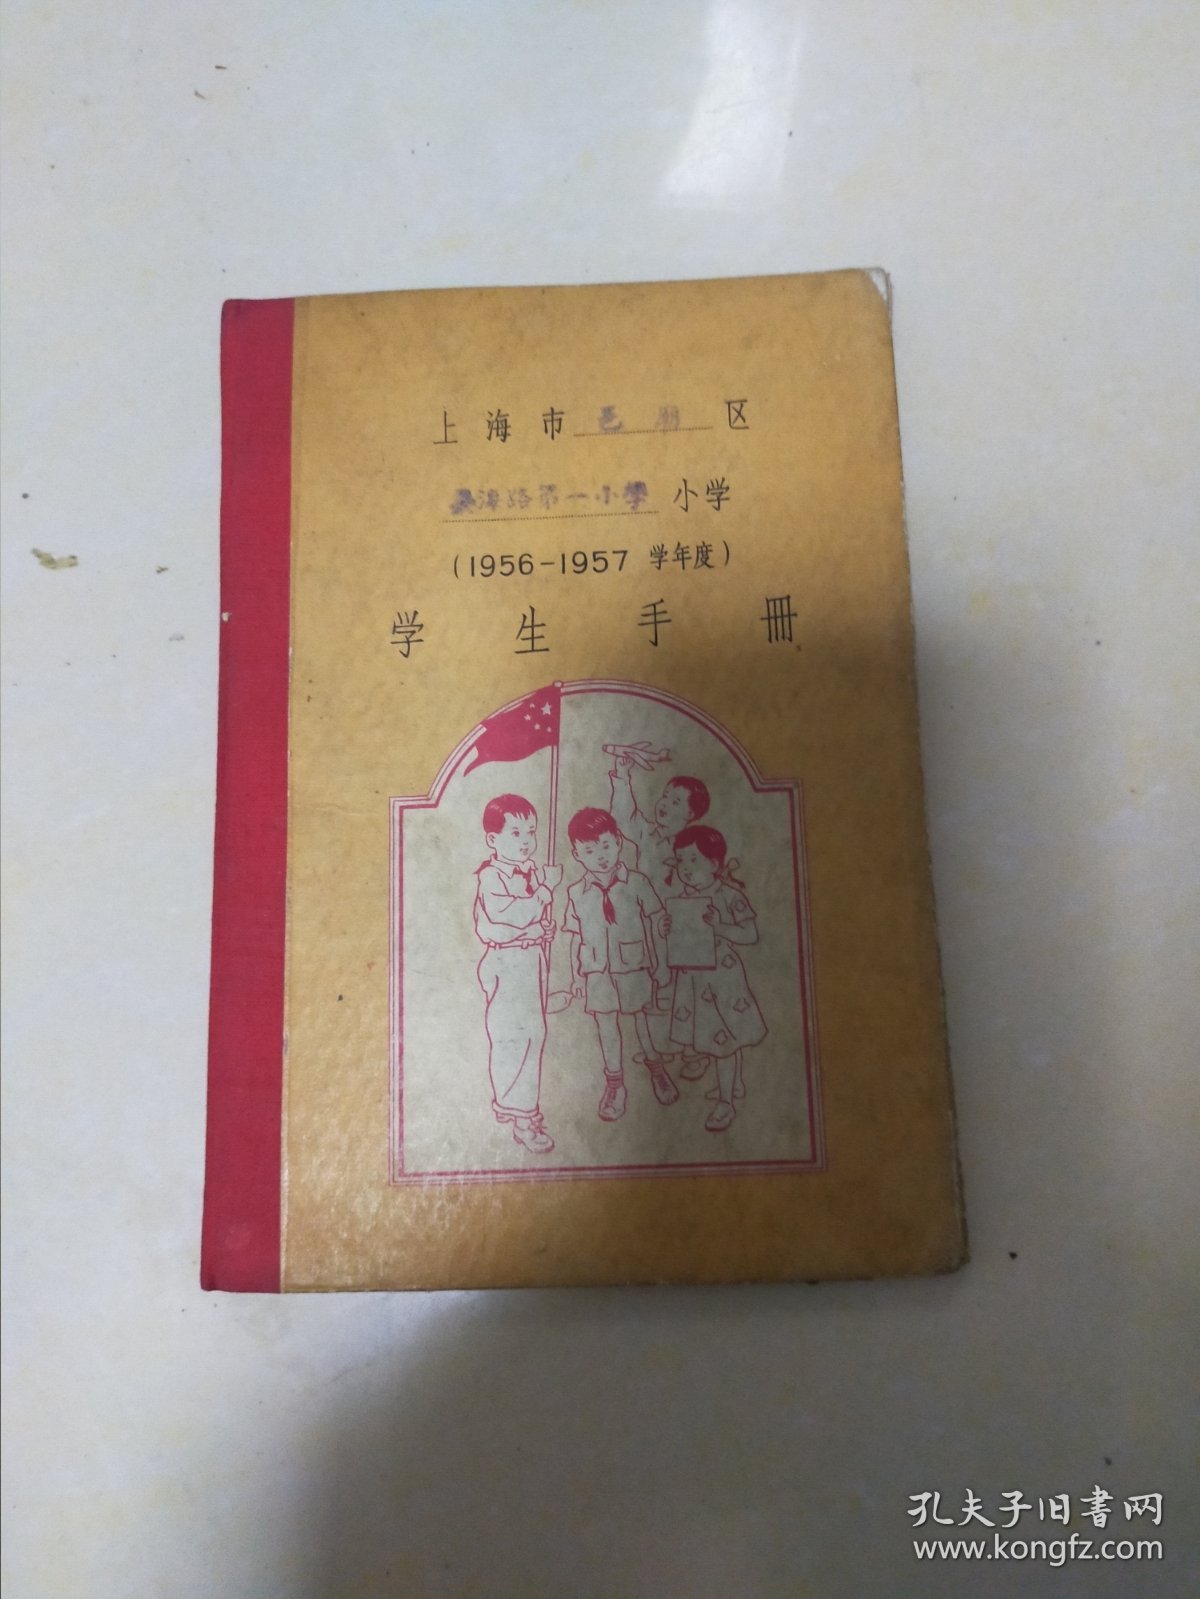 50年代上海小学生学习成绩手册